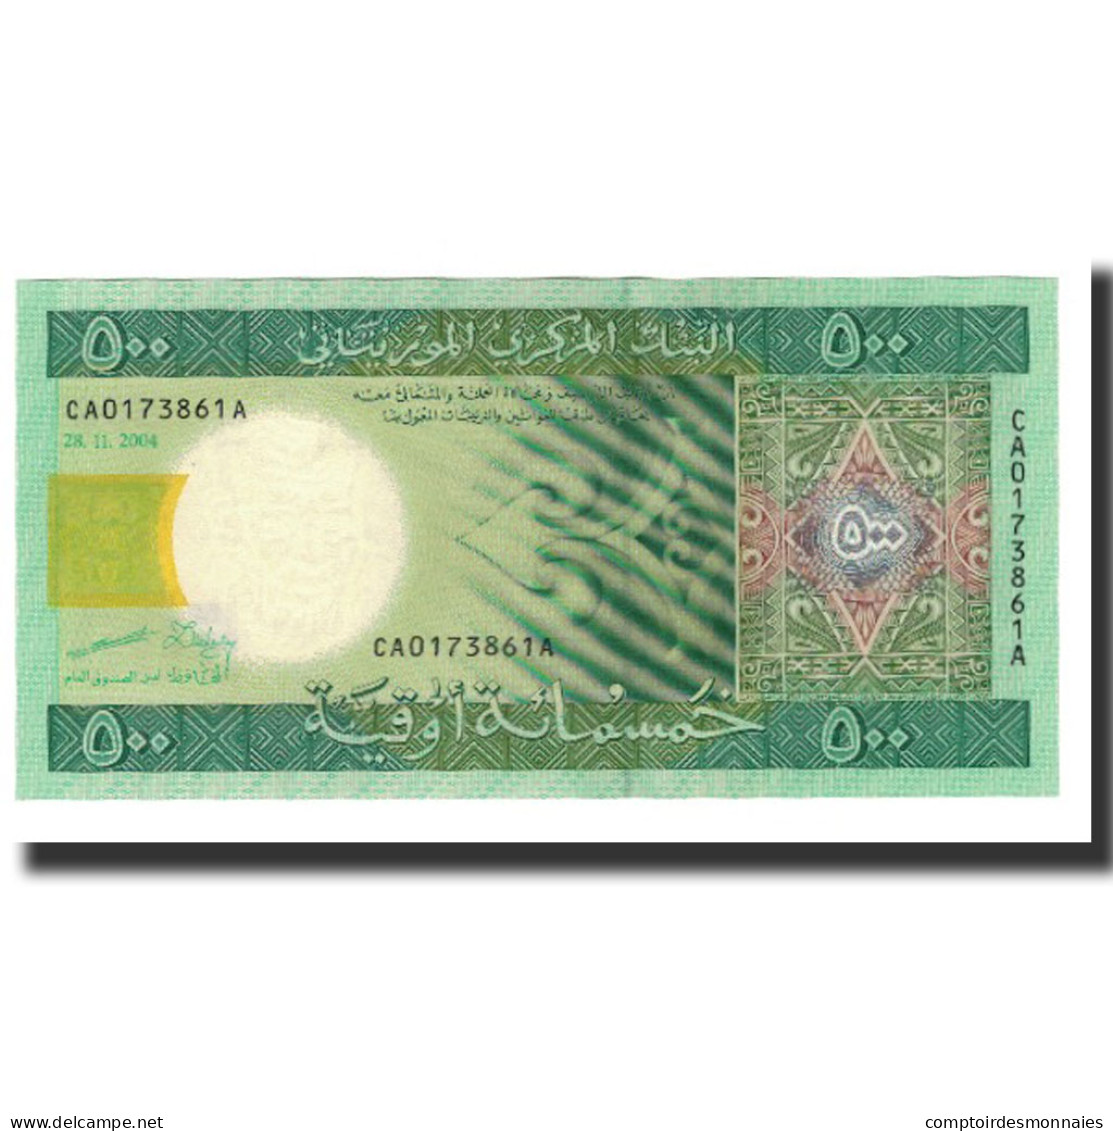 Billet, Mauritanie, 500 Ouguiya, 2004-11-28, KM:12a, NEUF - Mauritanie